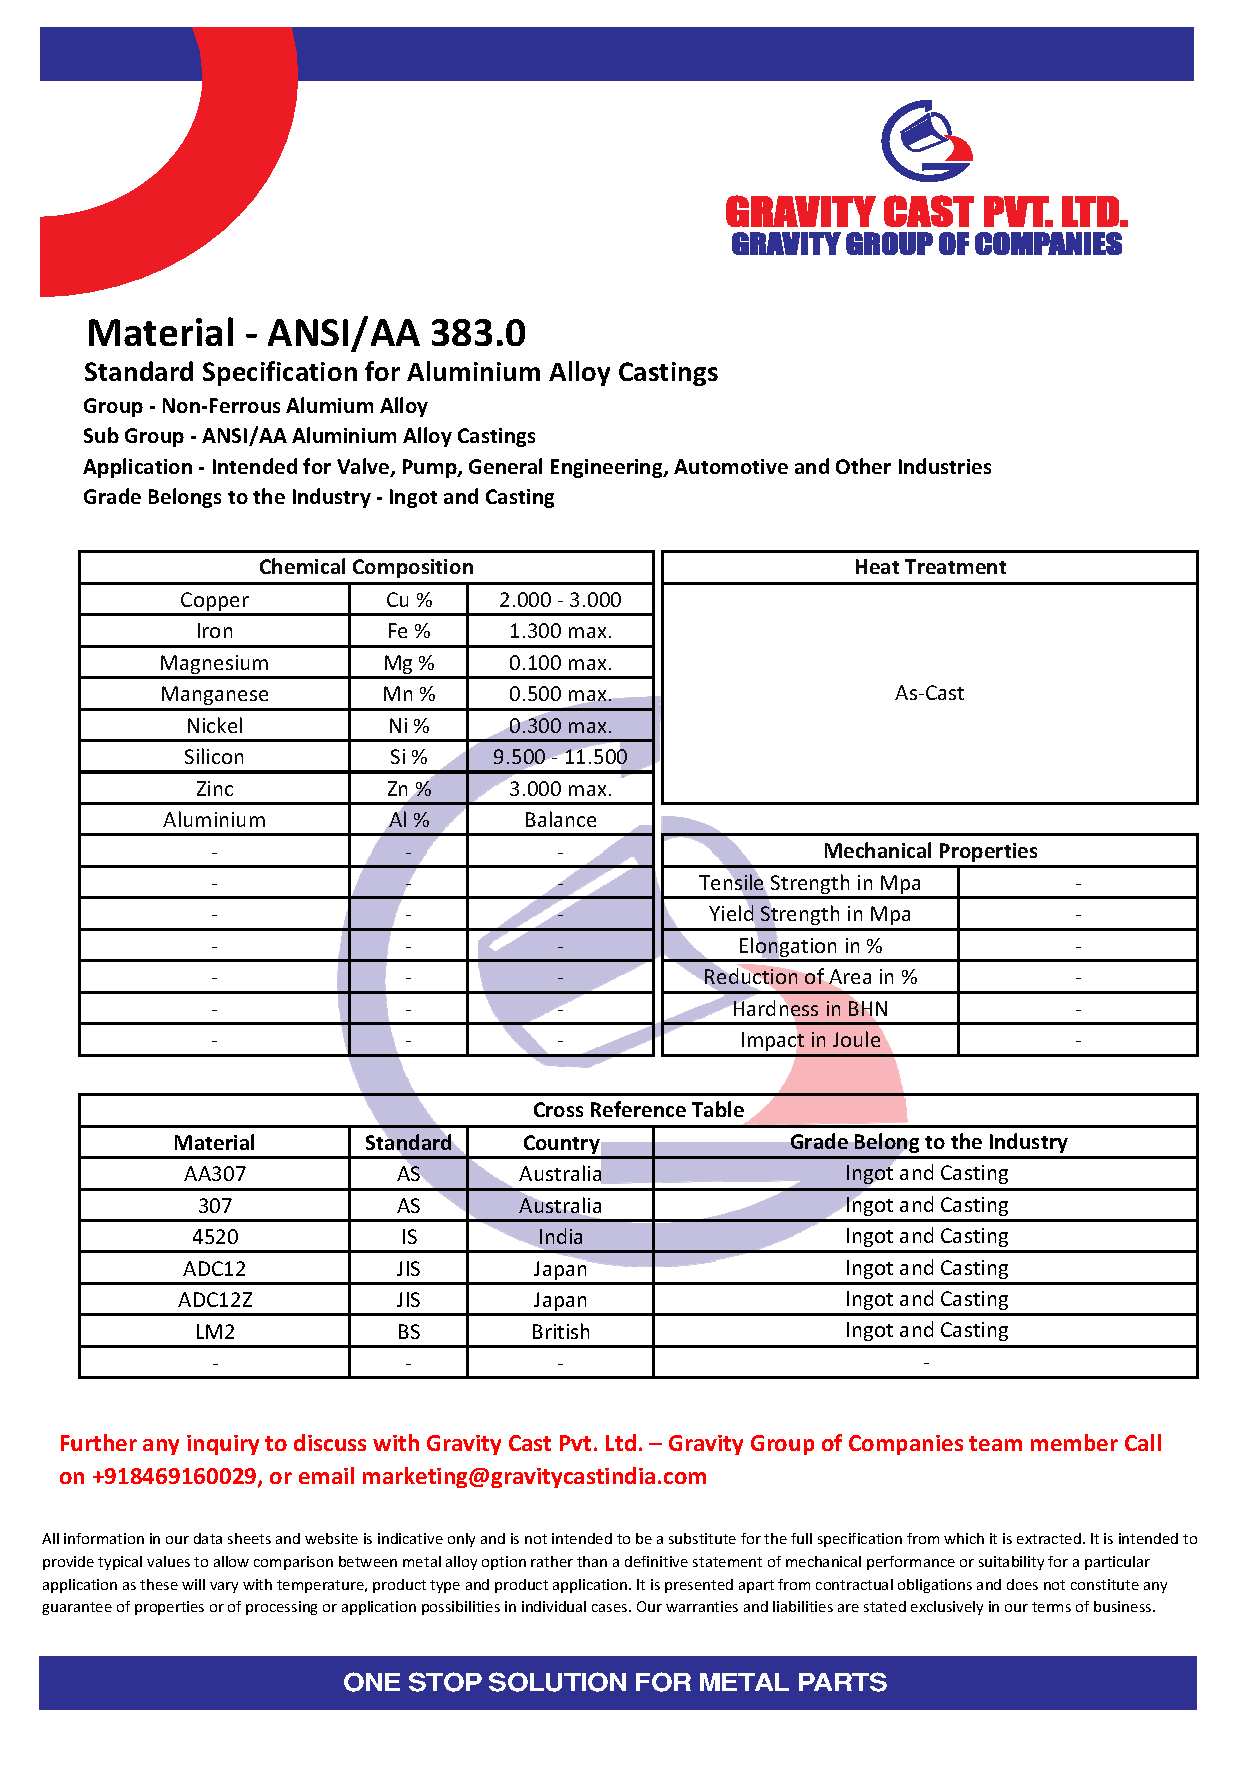 ANSI_AA 383.0.pdf